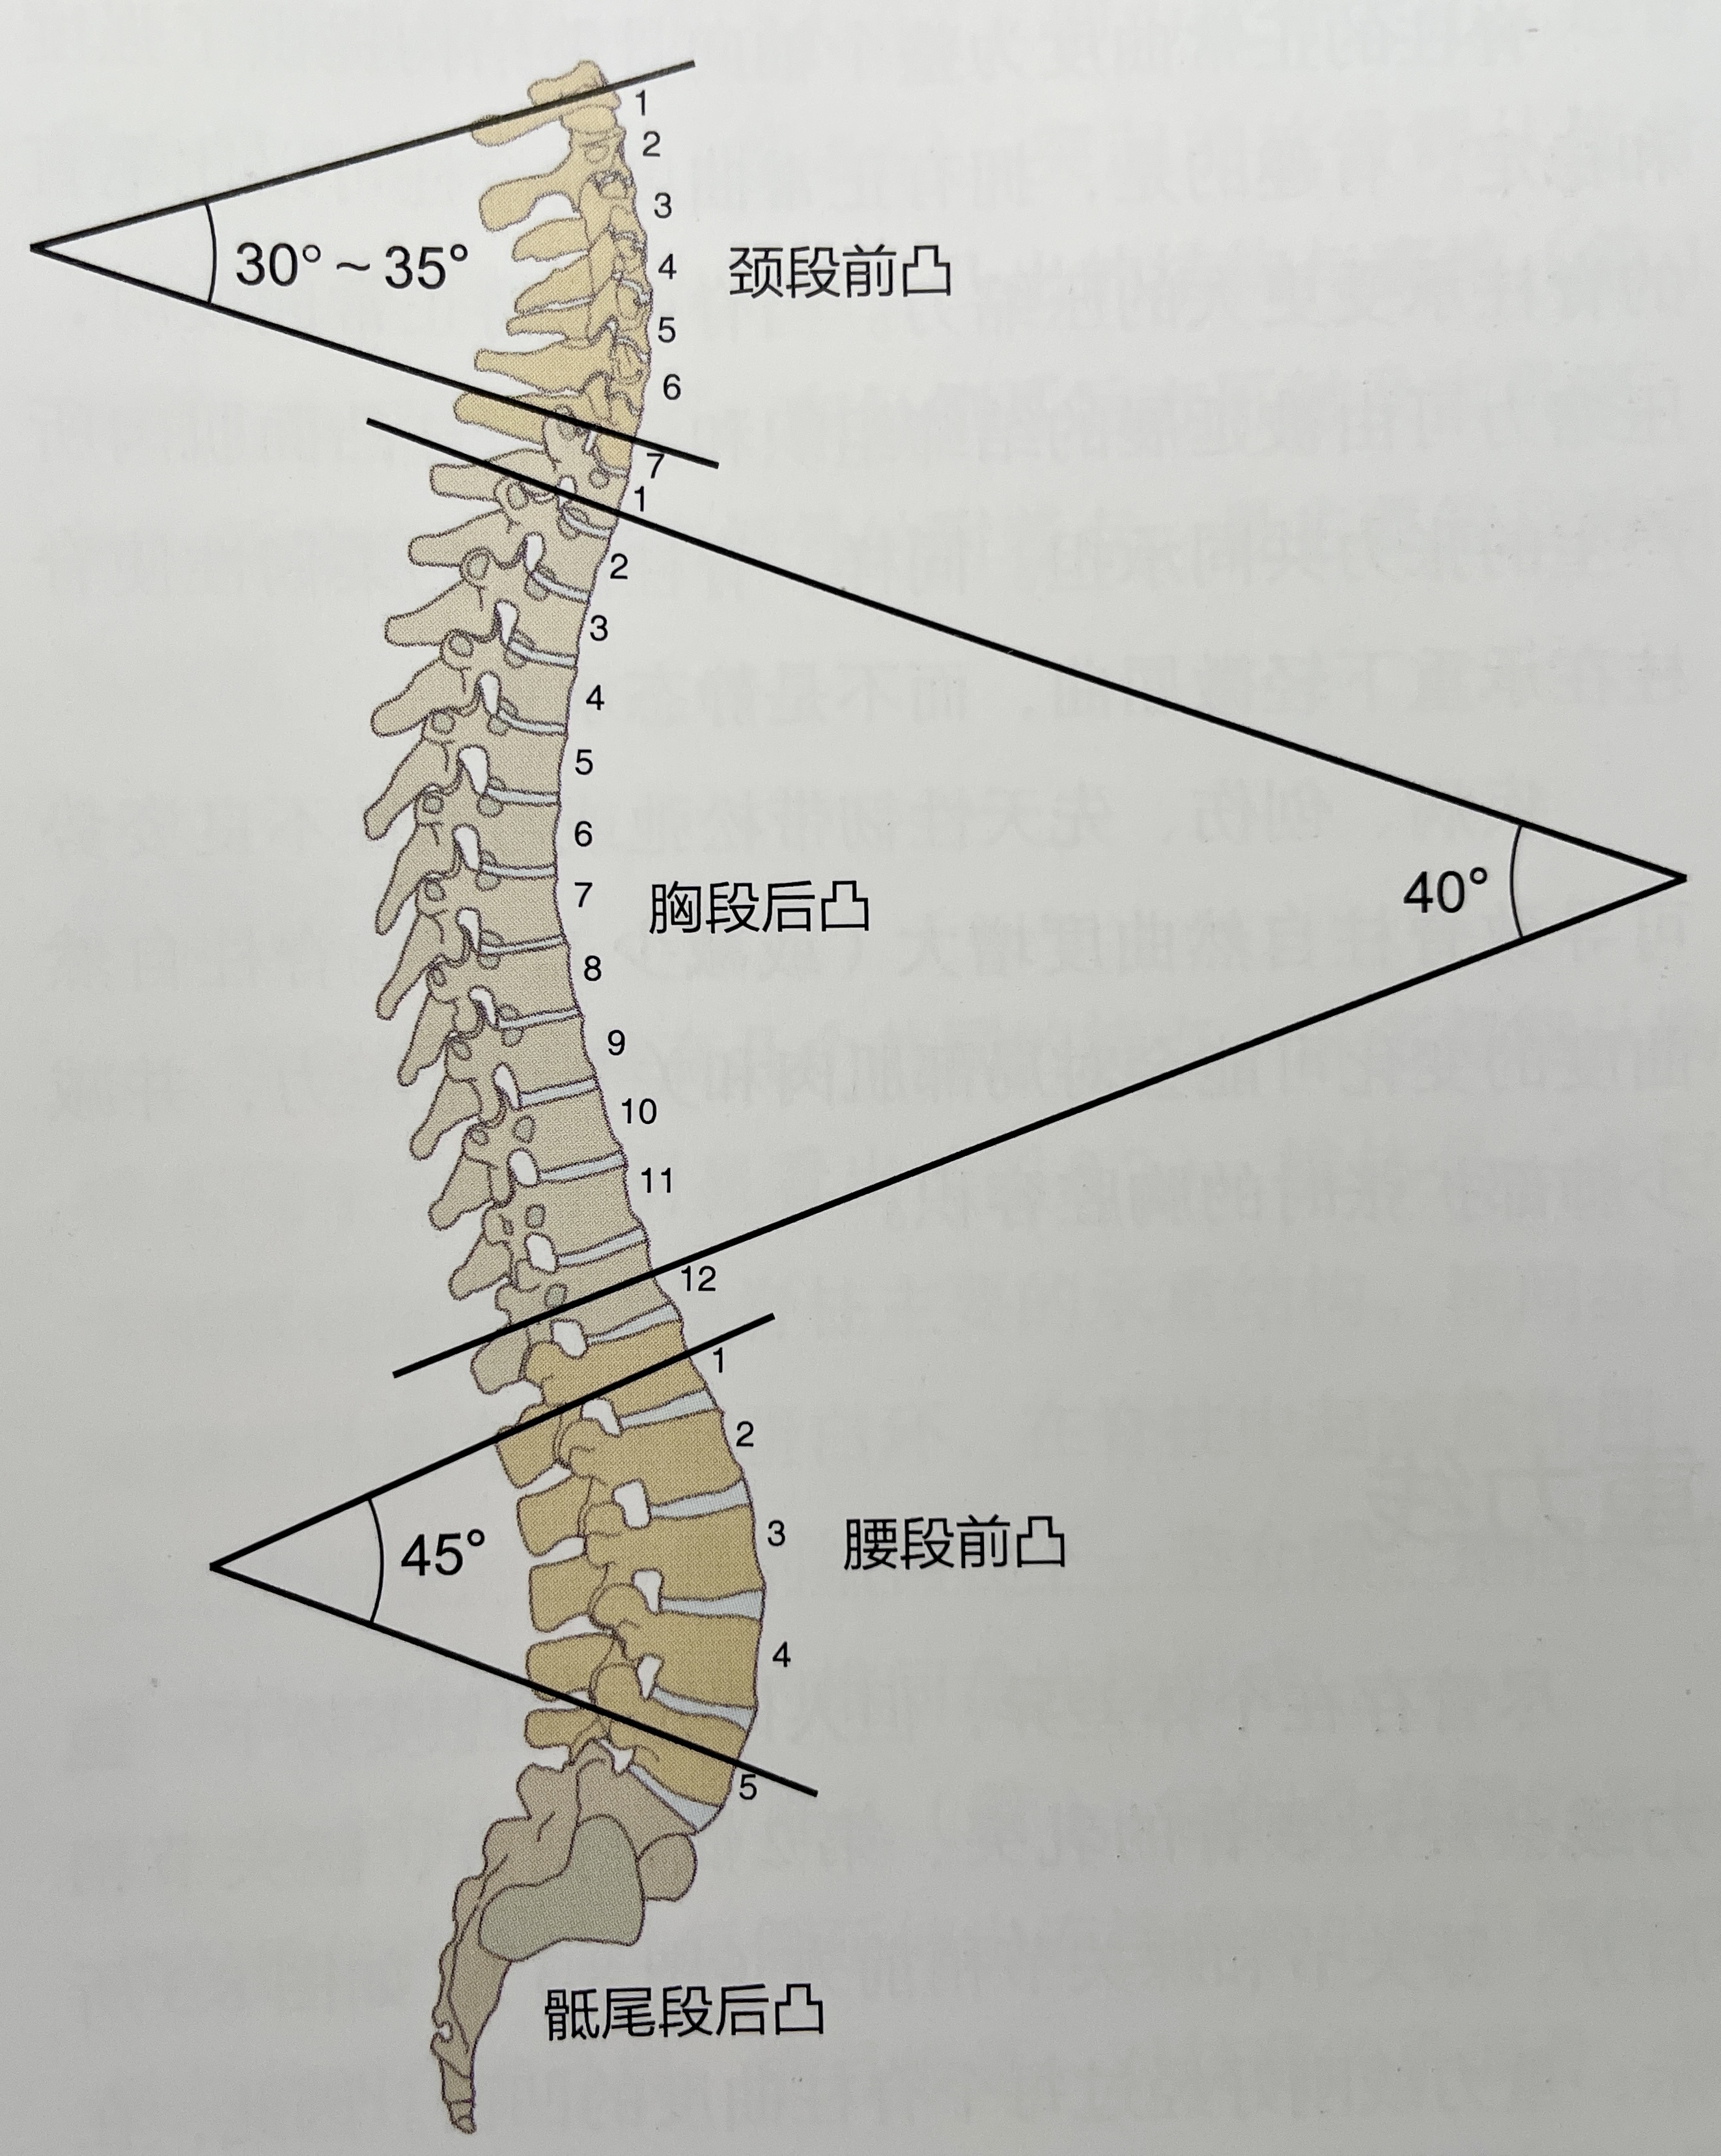  脊柱是不是很像蛇骨